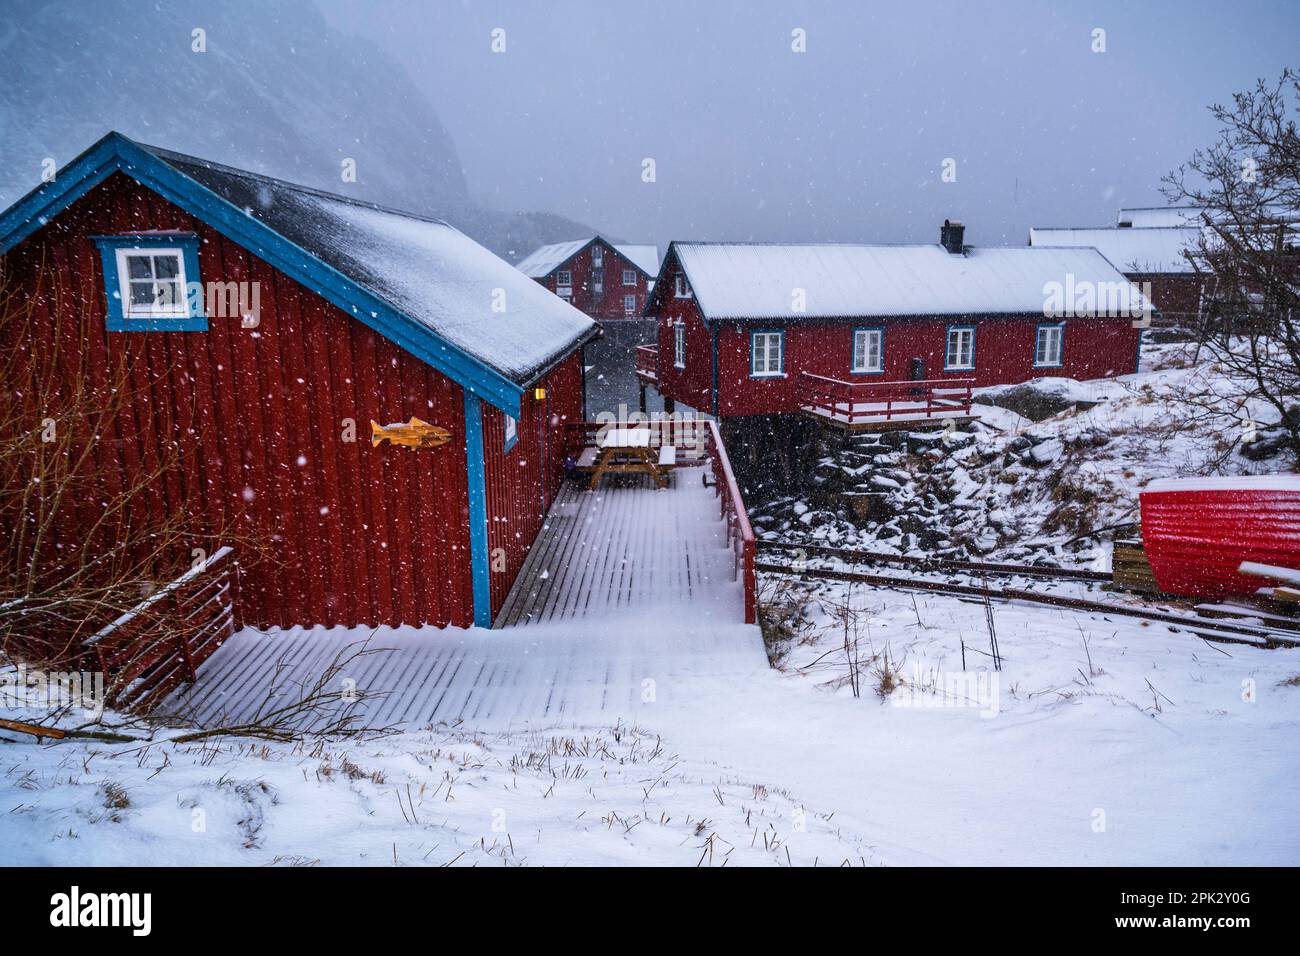 Typisches rotes Cottage (für Fischer oder Ferienunterkunft) in einem kleinen Dorf, das in dichtem Schneefall liegt. Dorf Å, Lofoten, Norwegen. Stockfoto